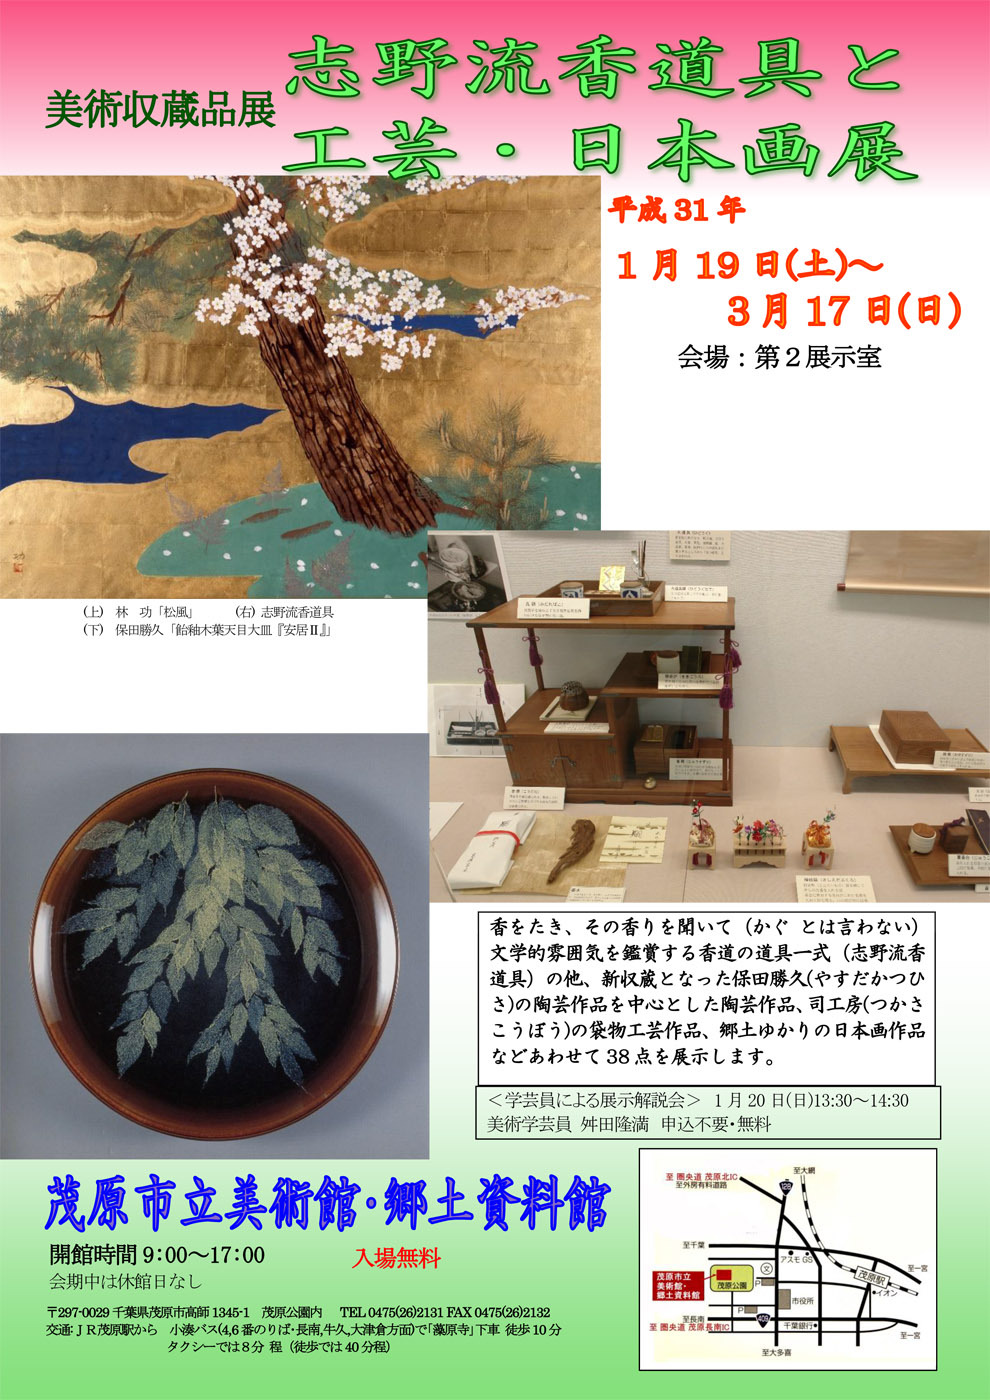 展覧会ポスター画像です。牧野三生郎のは日本画「室生寺」は、紅葉が見事な作品。林功の「風の旅（日本）」は法隆寺を描いた作品です。